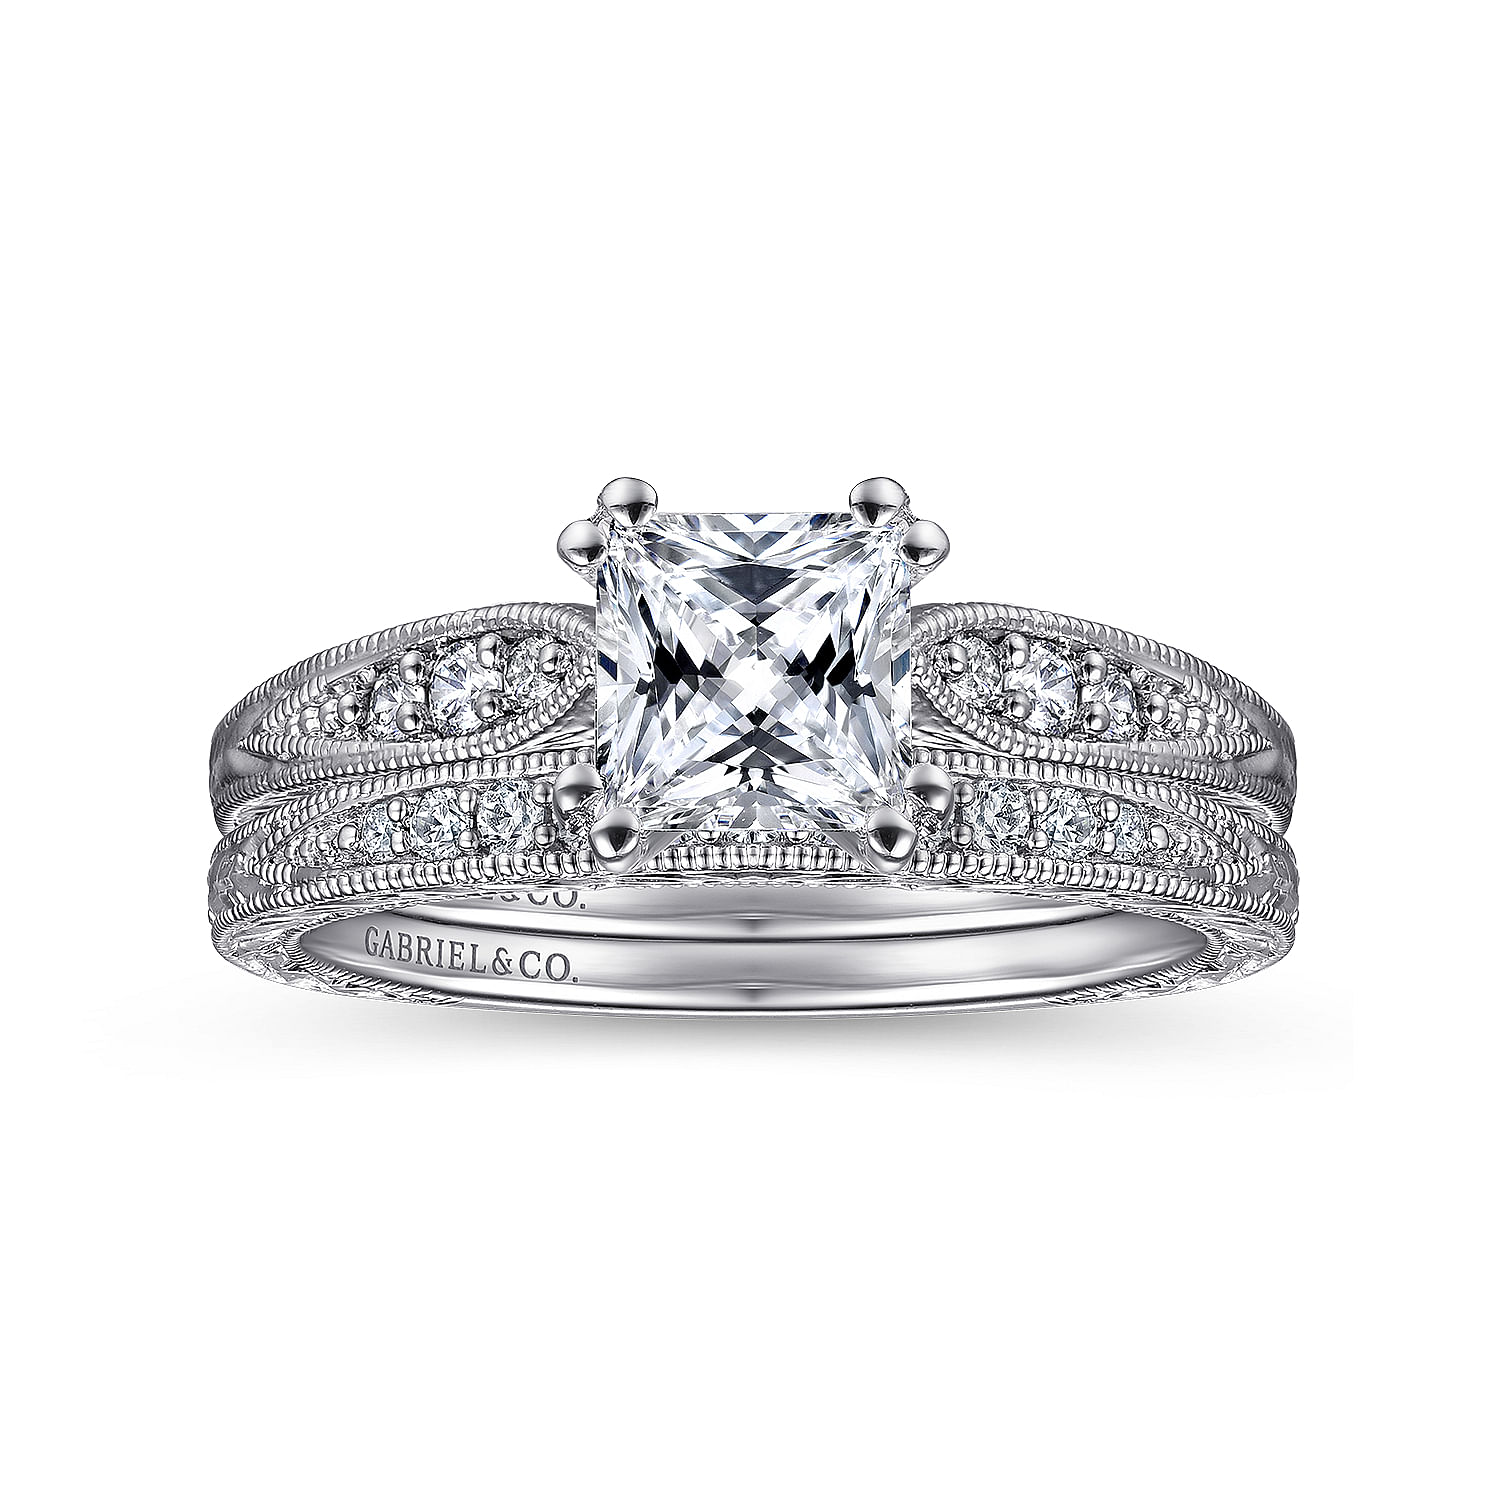 Kate - Vintage Inspired 14K White Gold Princess Cut Diamond Engagement Ring - 0.09 ct - Shot 4